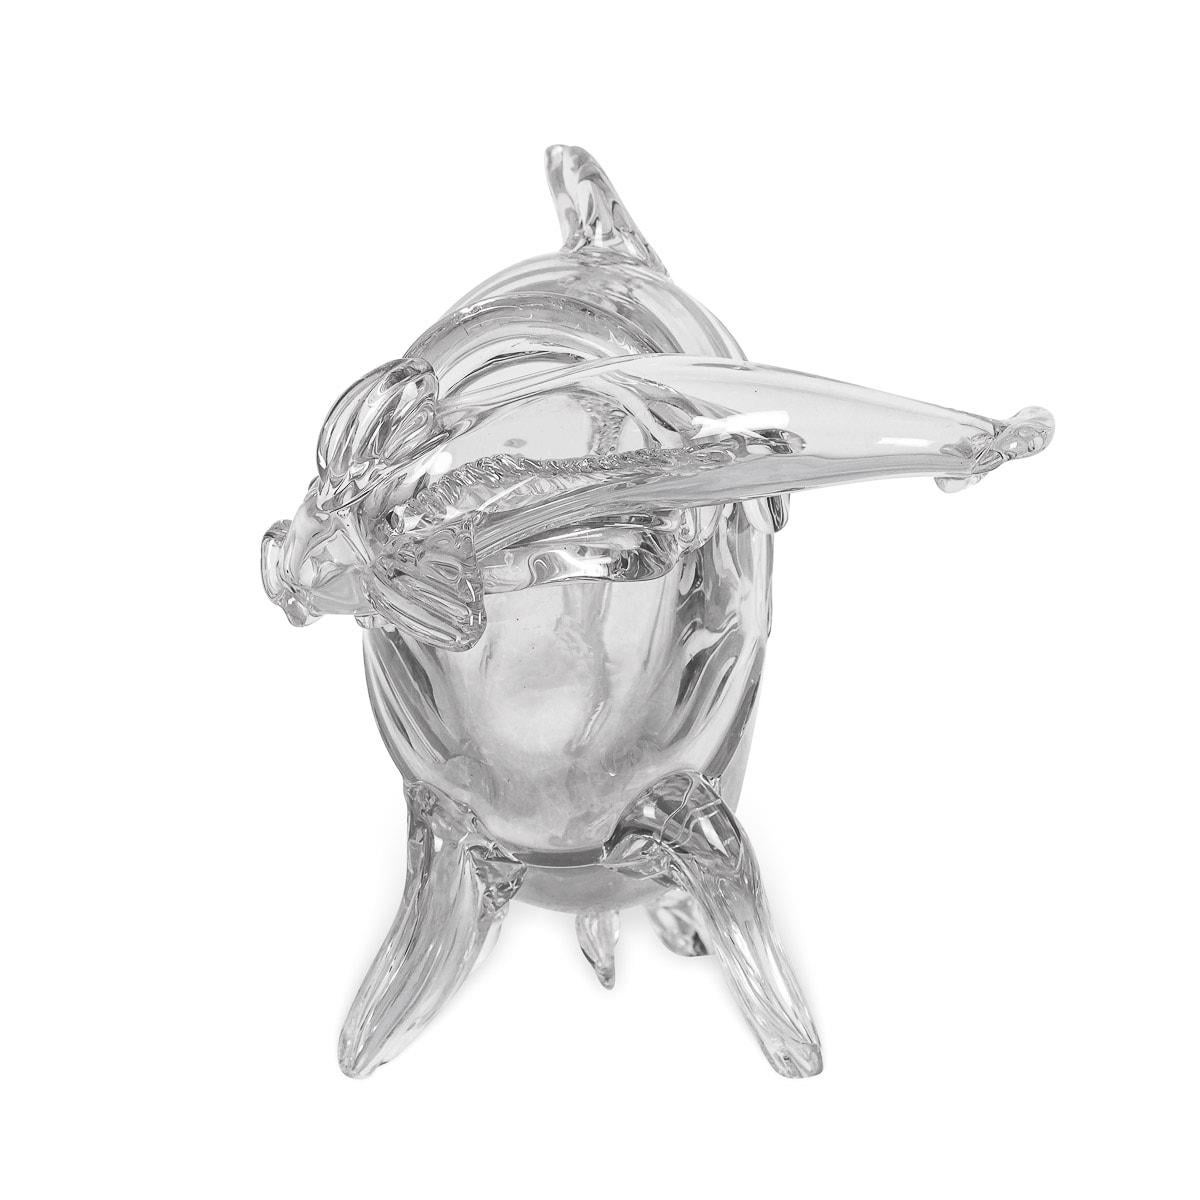 Grand modèle de poisson en cristal de Saint Louis du milieu du 20e siècle, soufflé et taillé à la main depuis 1586 à Saint-Louis-les-Bitche en Moselle. Dessiné par Jean Sala (1895-1976), Jean Sala est né en Espagne (actif en